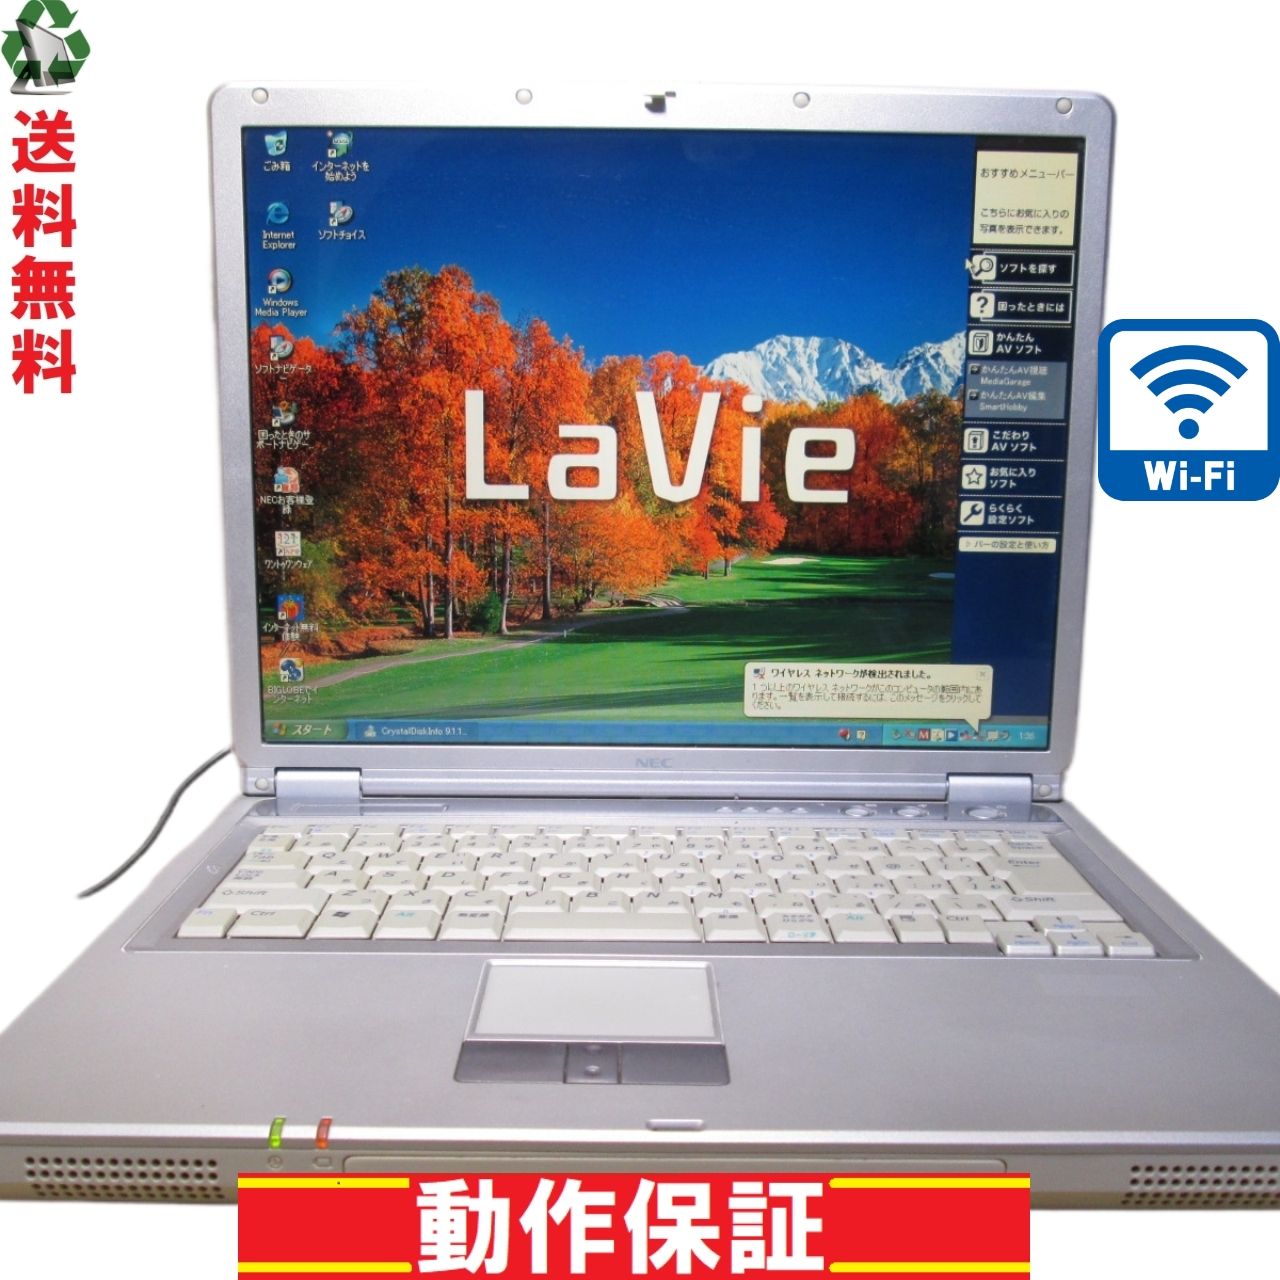 NEC LaVie L LL350/DD【AMD Sempron2800+ 1.6GHz】 256MBメモリ  【WindowsXP】Wi-Fi／長期保証 [90064] - メルカリ